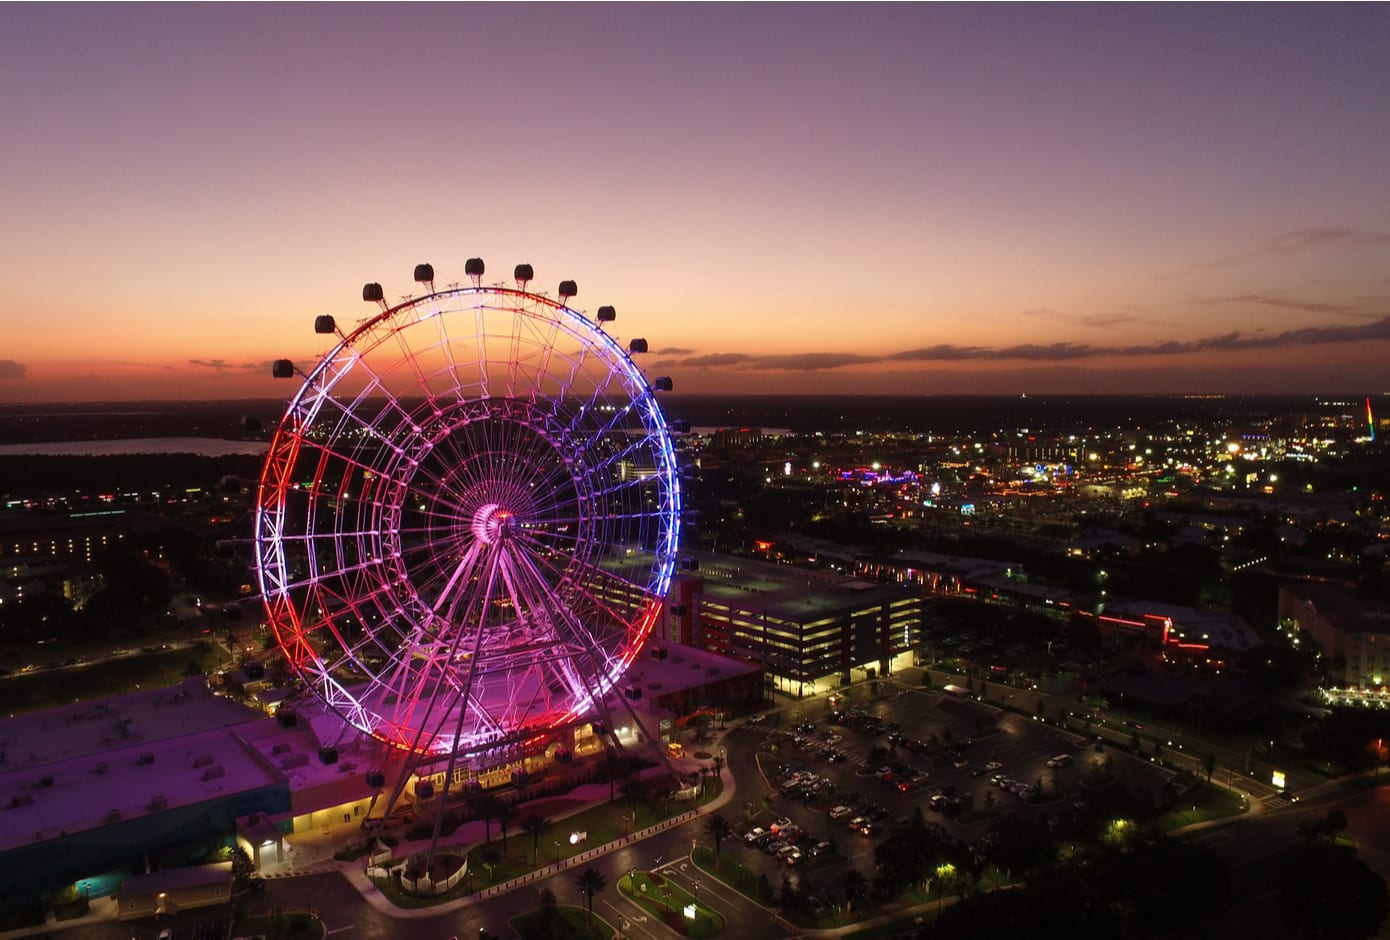 The Orlando Eye Wheel at ICON Park.